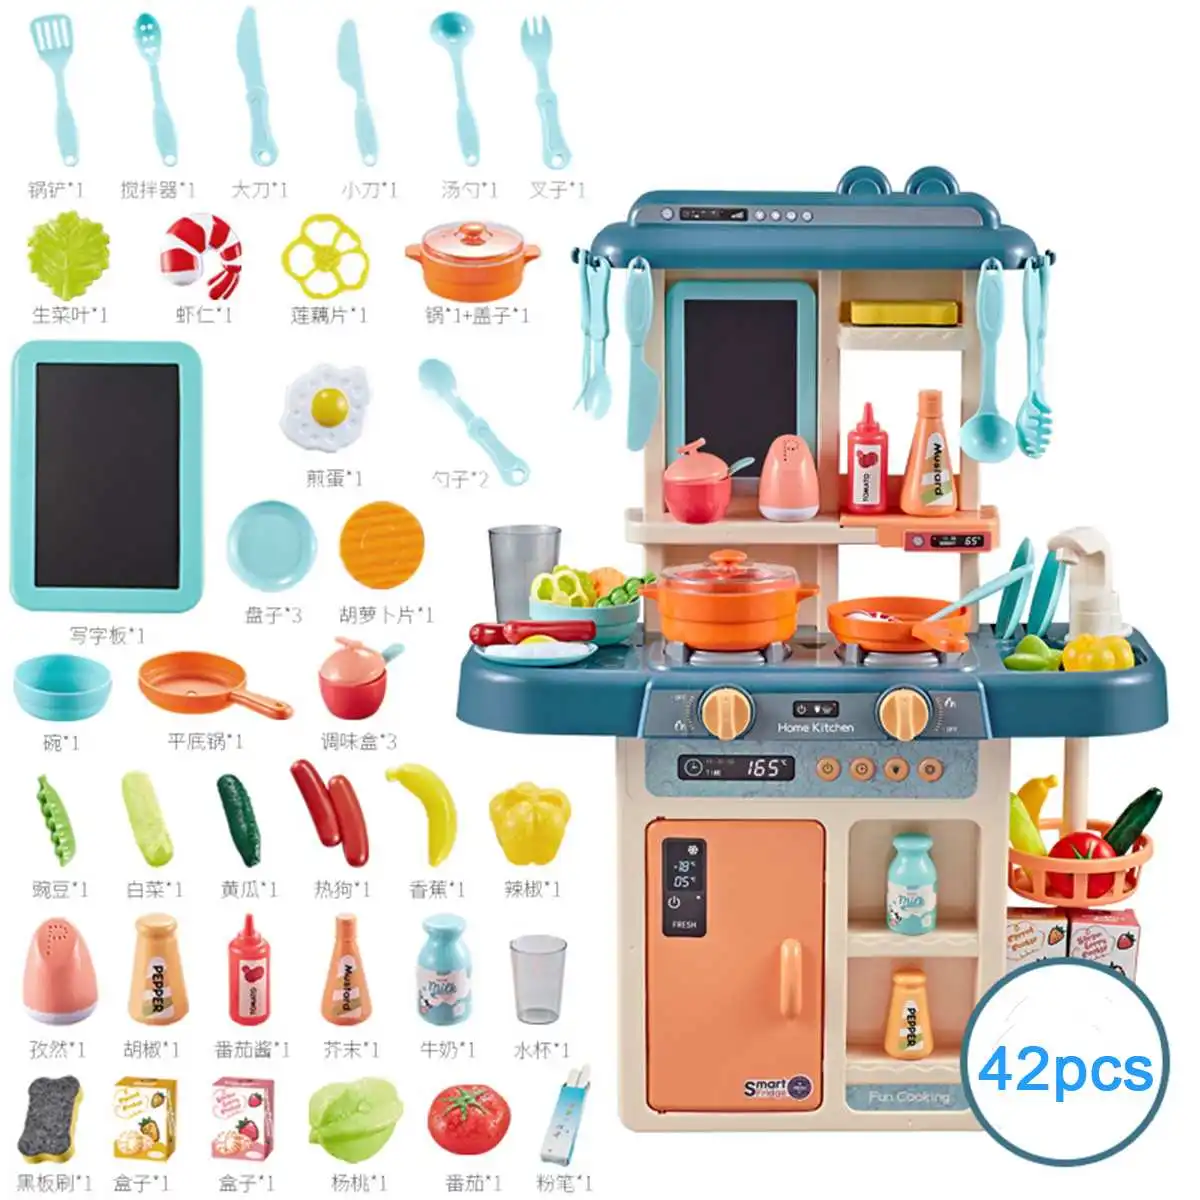 42Pcs/Set Kid Kitchen Toys Simulation Kitchen Toy Spray Water Dinnerware Pretend Play Kitchen Cooking Table Set Children's Gift - Цвет: Зеленый